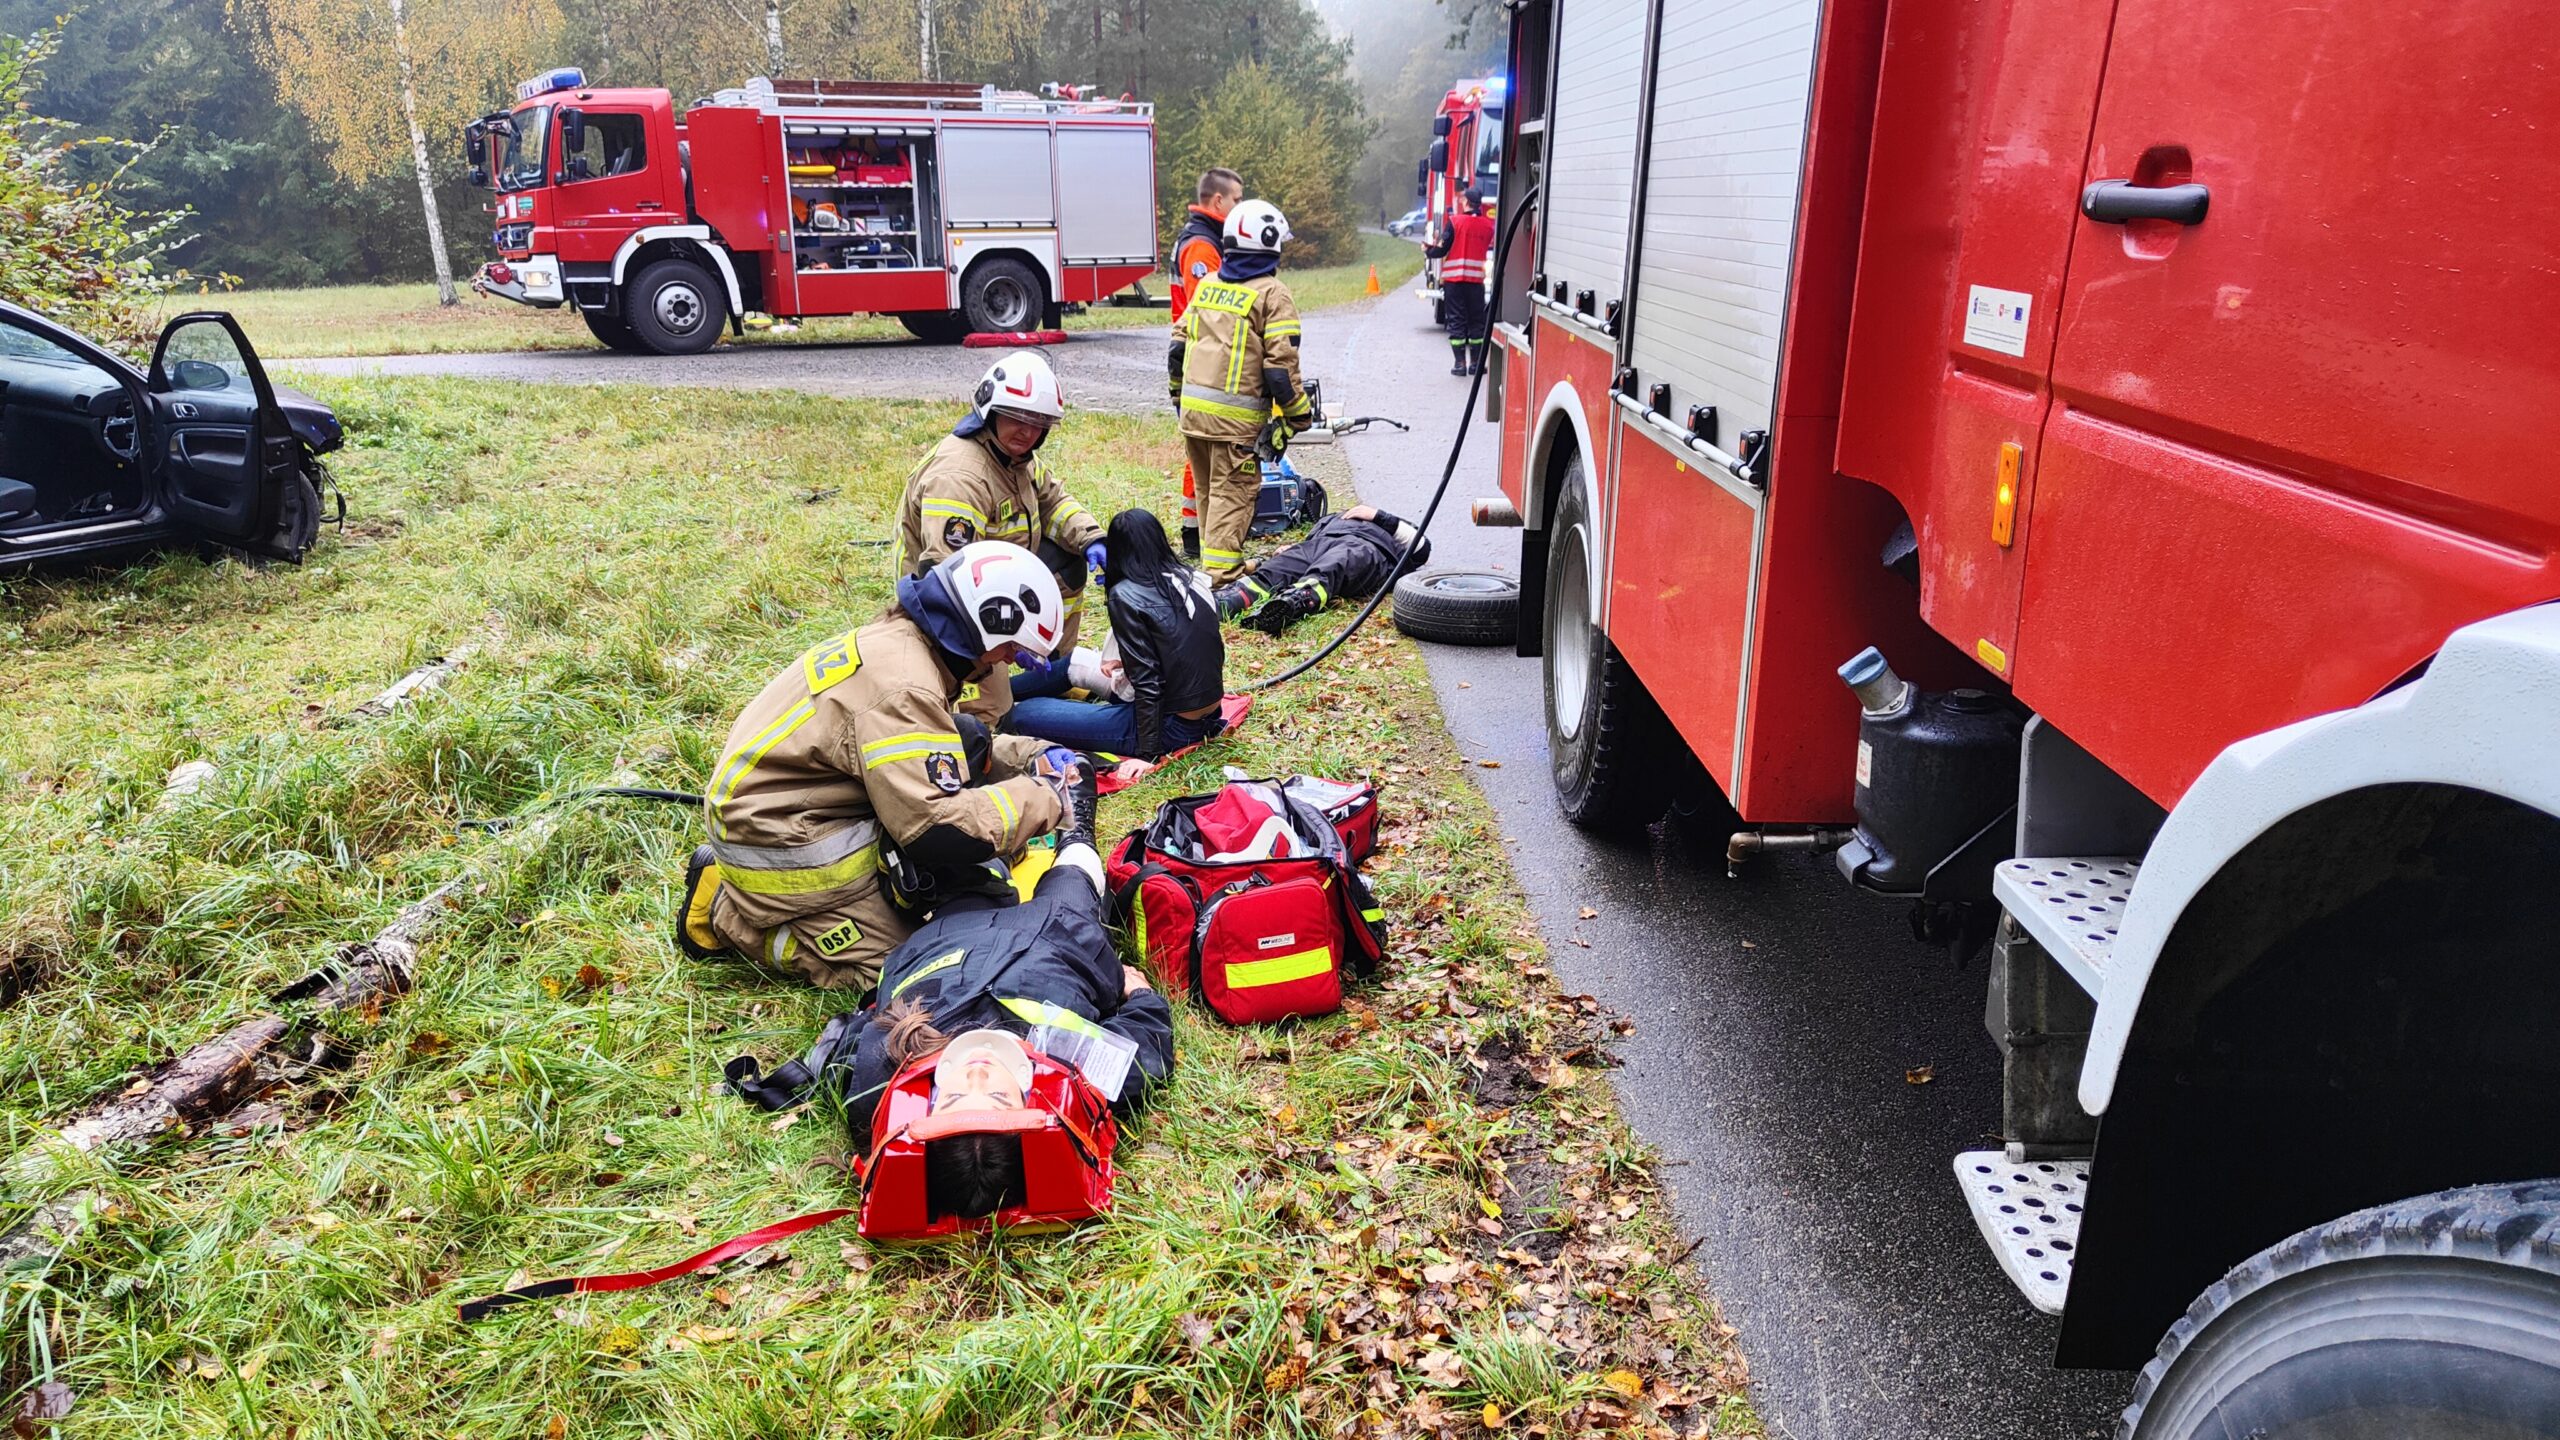 Strażacy ćwiczy udzielanie pierwszej pomocy przedmedycznej. Z prawej strony ustawiony jest samochód pożarniczy. Z tyłu na skrzyżowaniu ustawiony jest kolejny samochód strażacki. Ma otwartą jedną z żaluzji sprzętowych